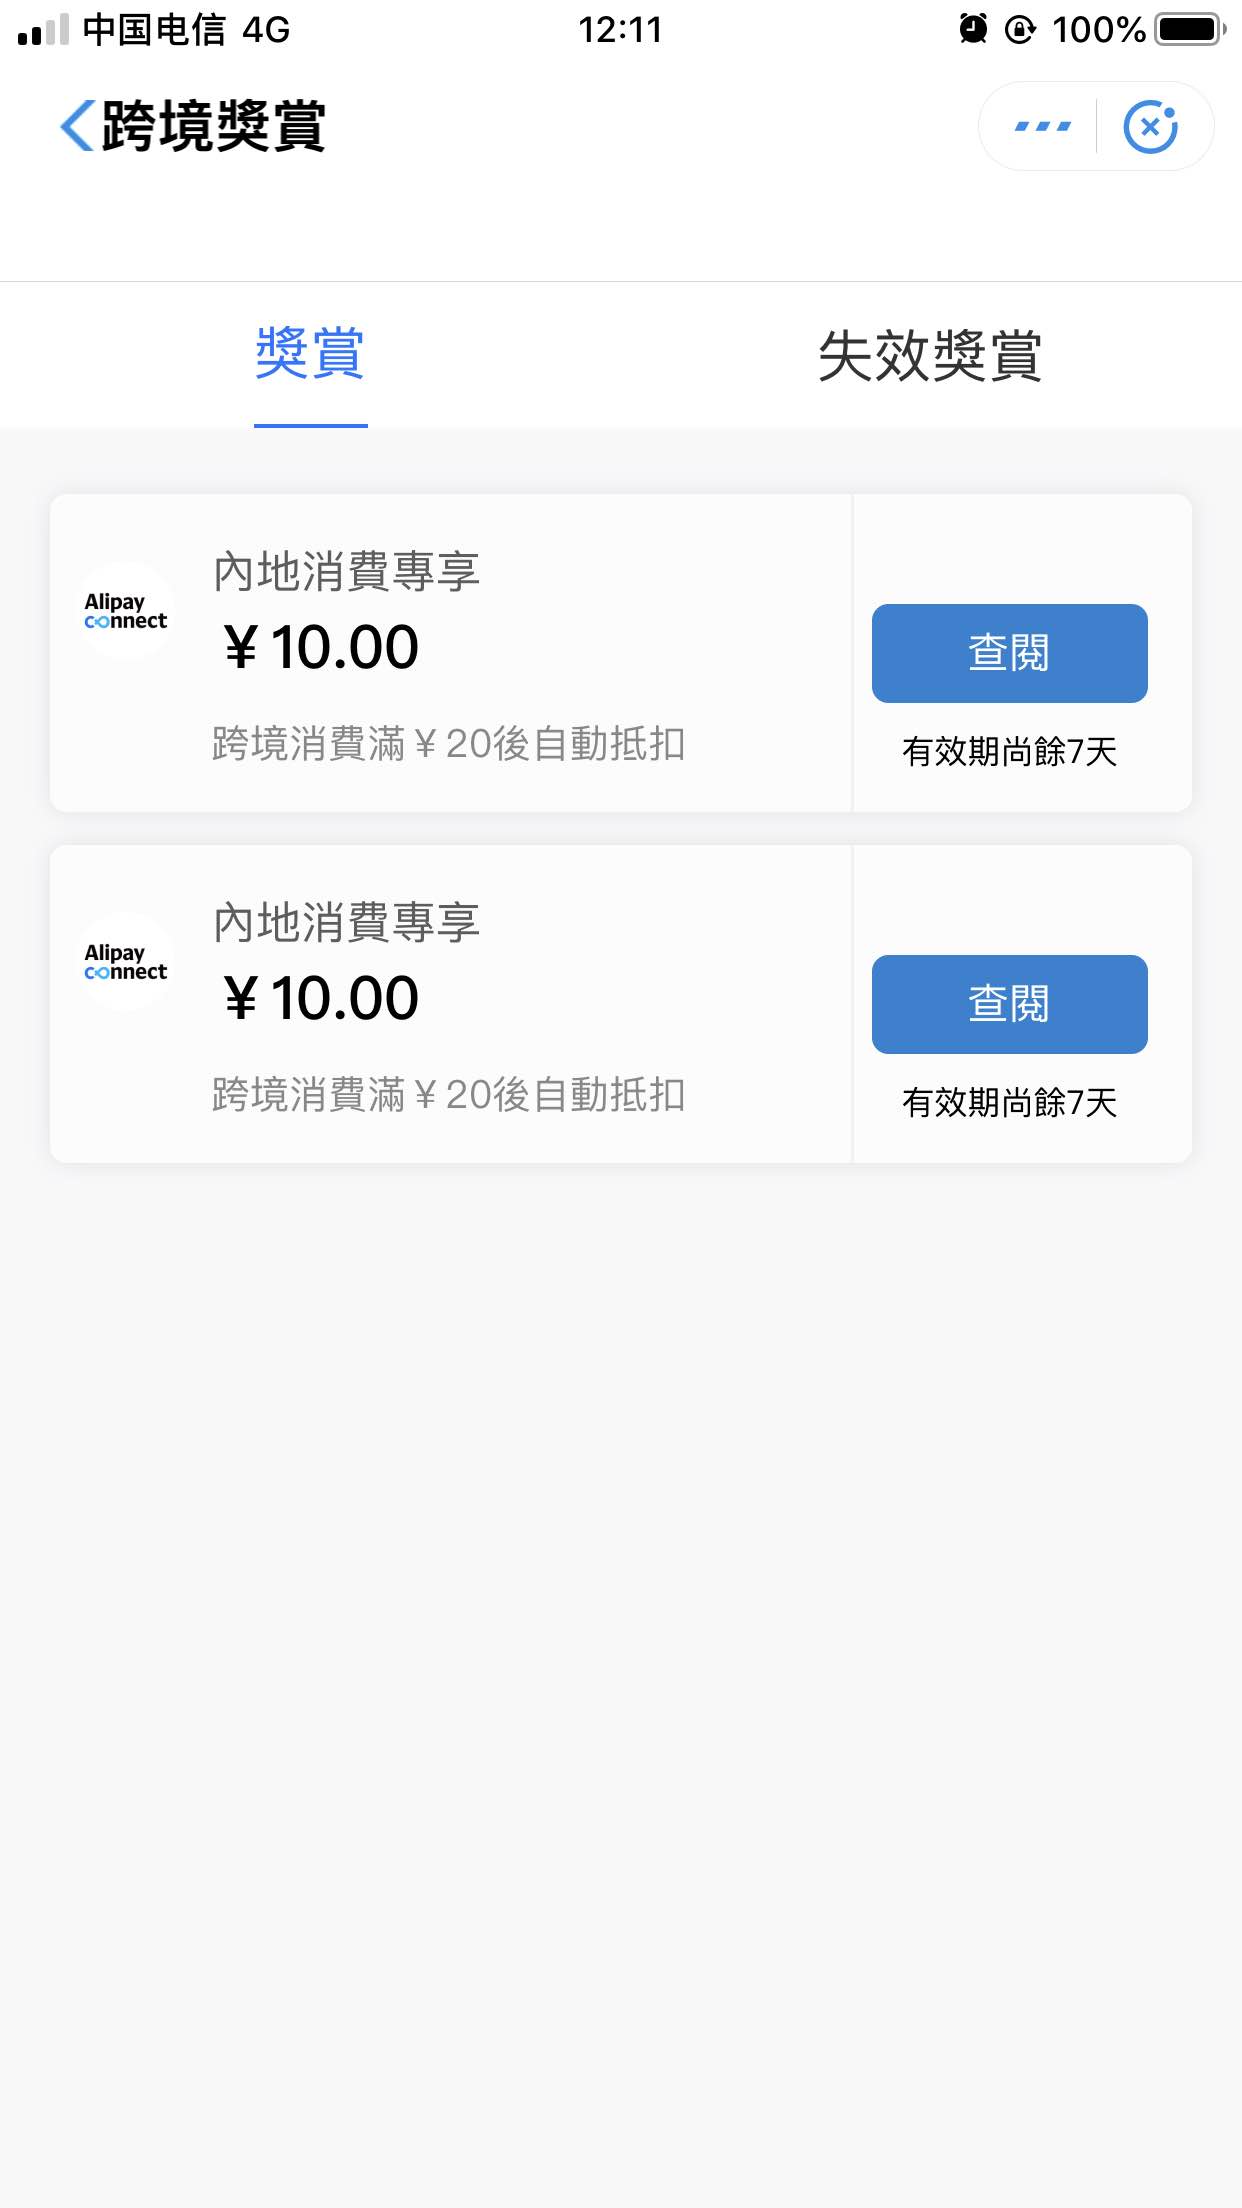 Alipayhk抵扣券10元-惠小助(52huixz.com)